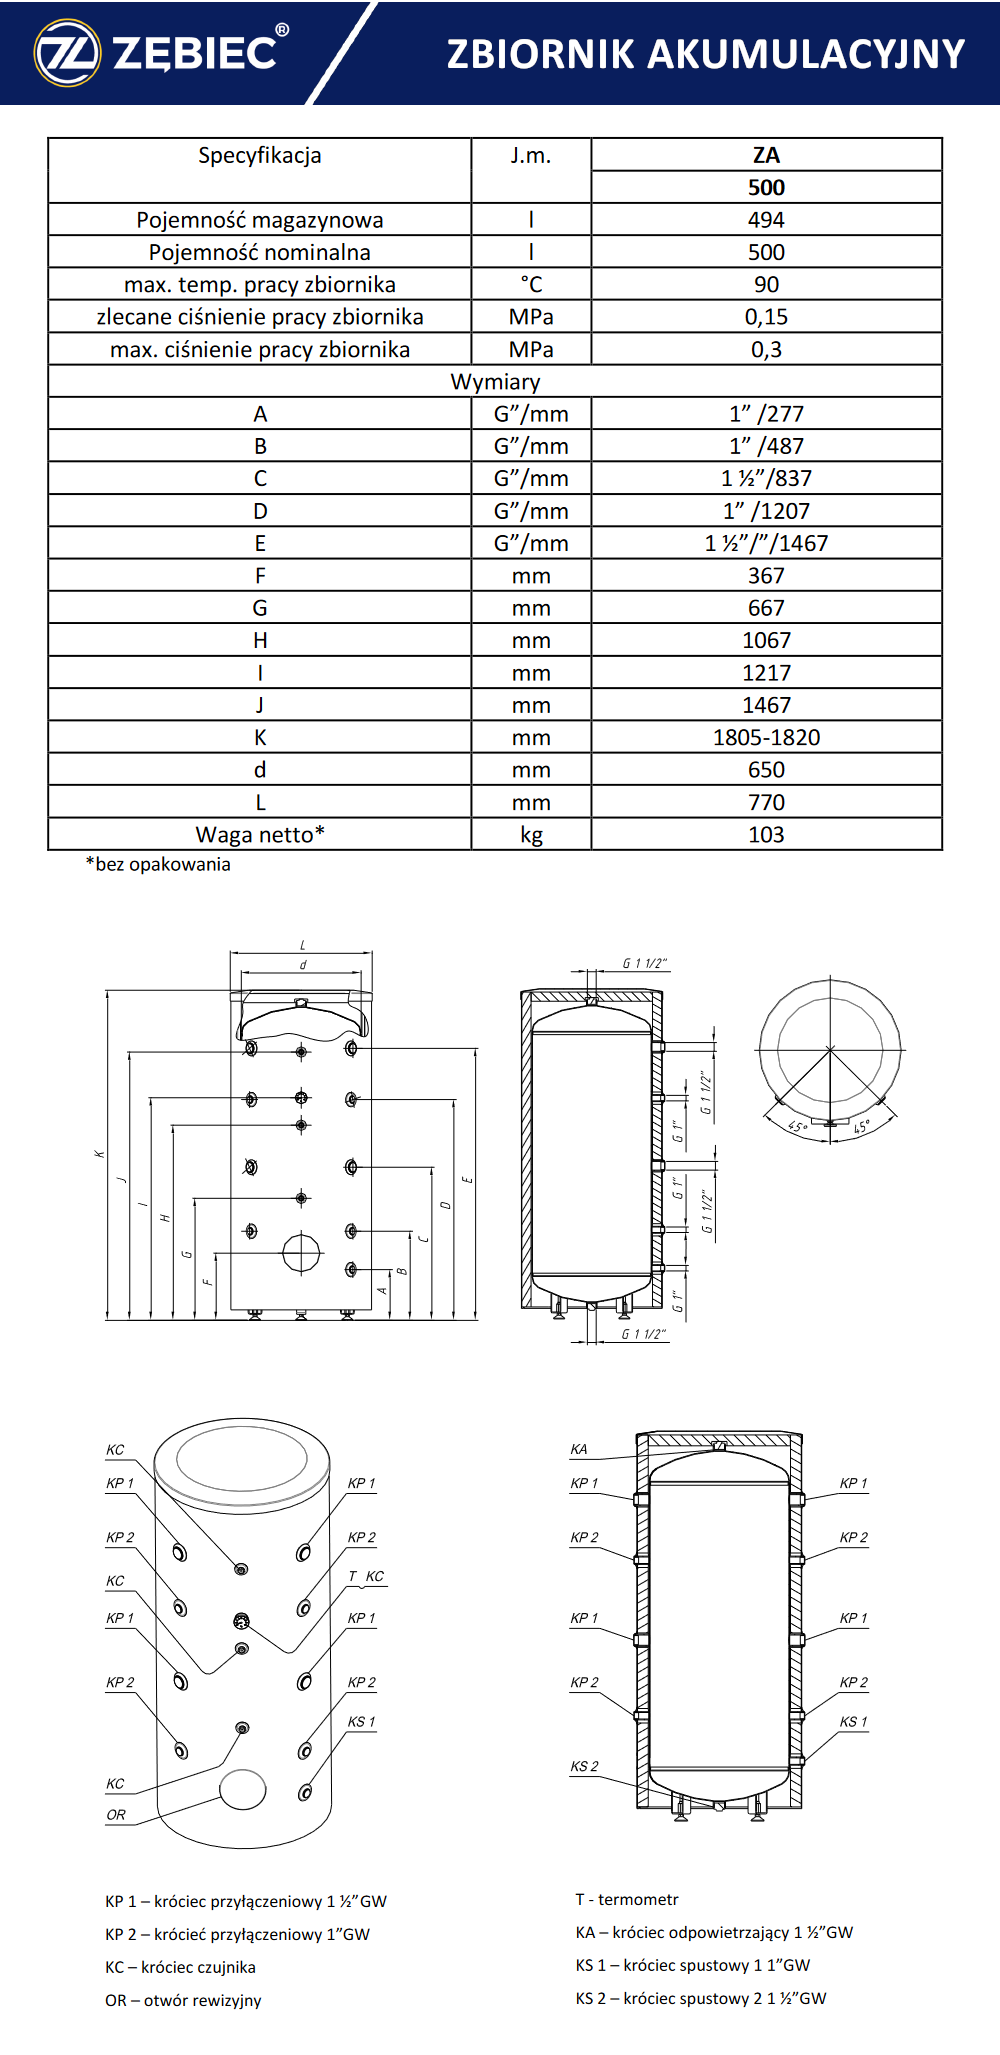 Parametry techniczne zbiornika akumulacyjnego - bufora Zębiec